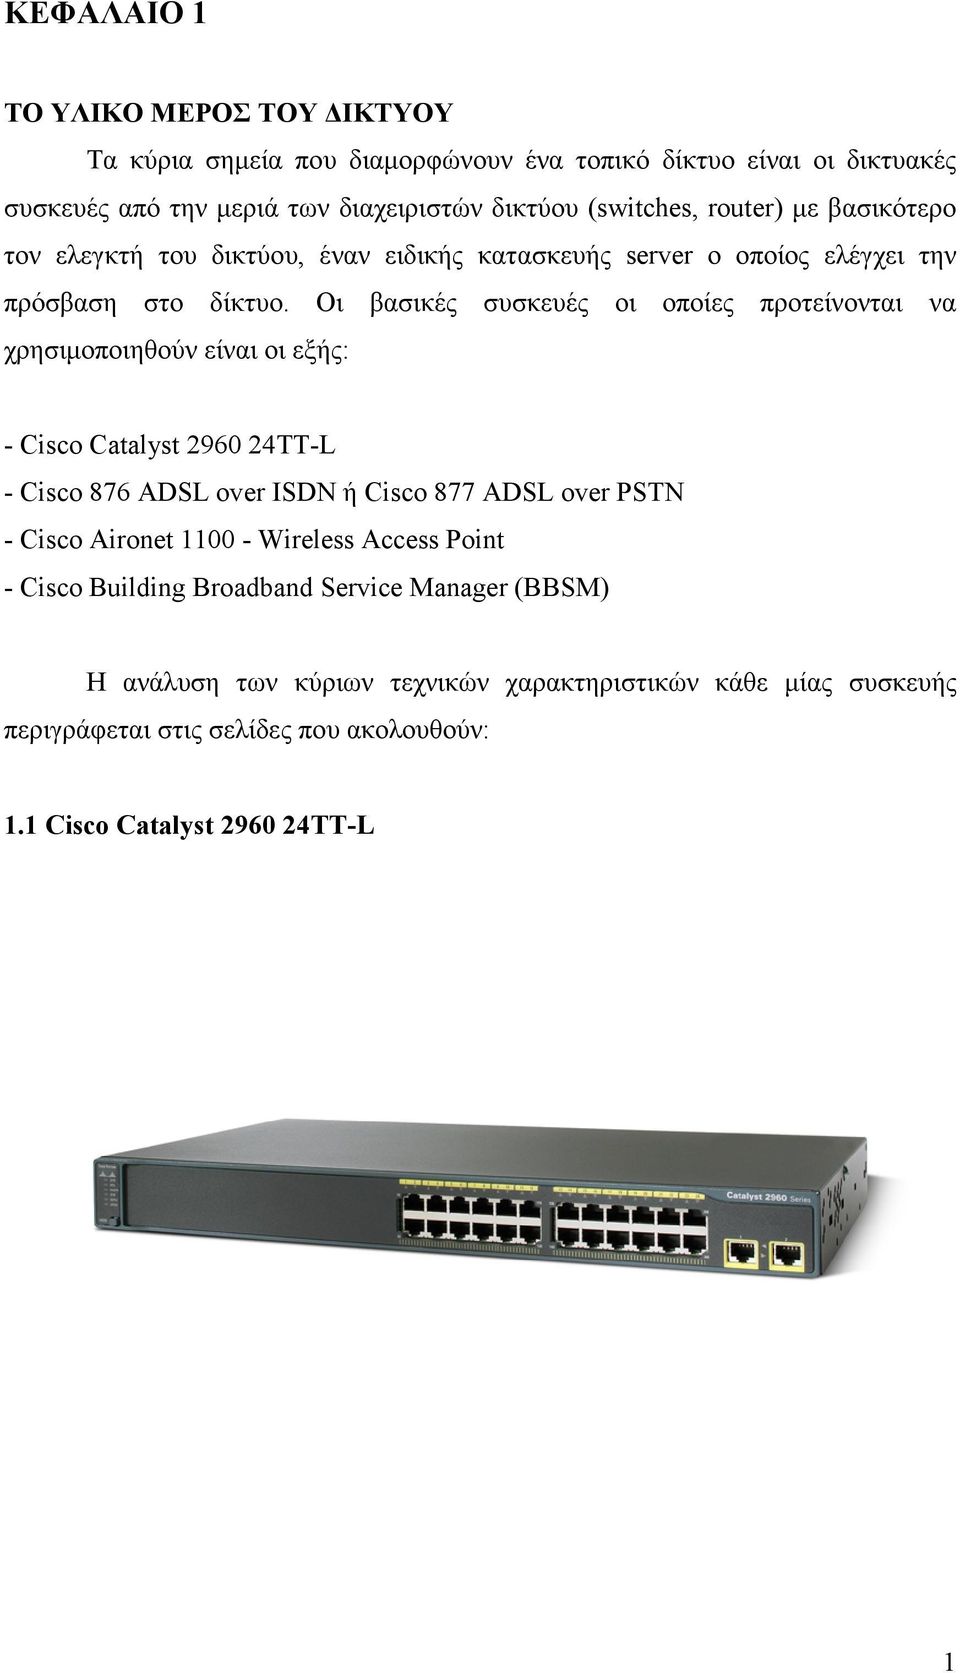 Οι βασικές συσκευές οι οποίες προτείνονται να χρησιµοποιηθούν είναι οι εξής: - Cisco Catalyst 2960 24TT-L - Cisco 876 ADSL over ISDN ή Cisco 877 ADSL over PSTN - Cisco